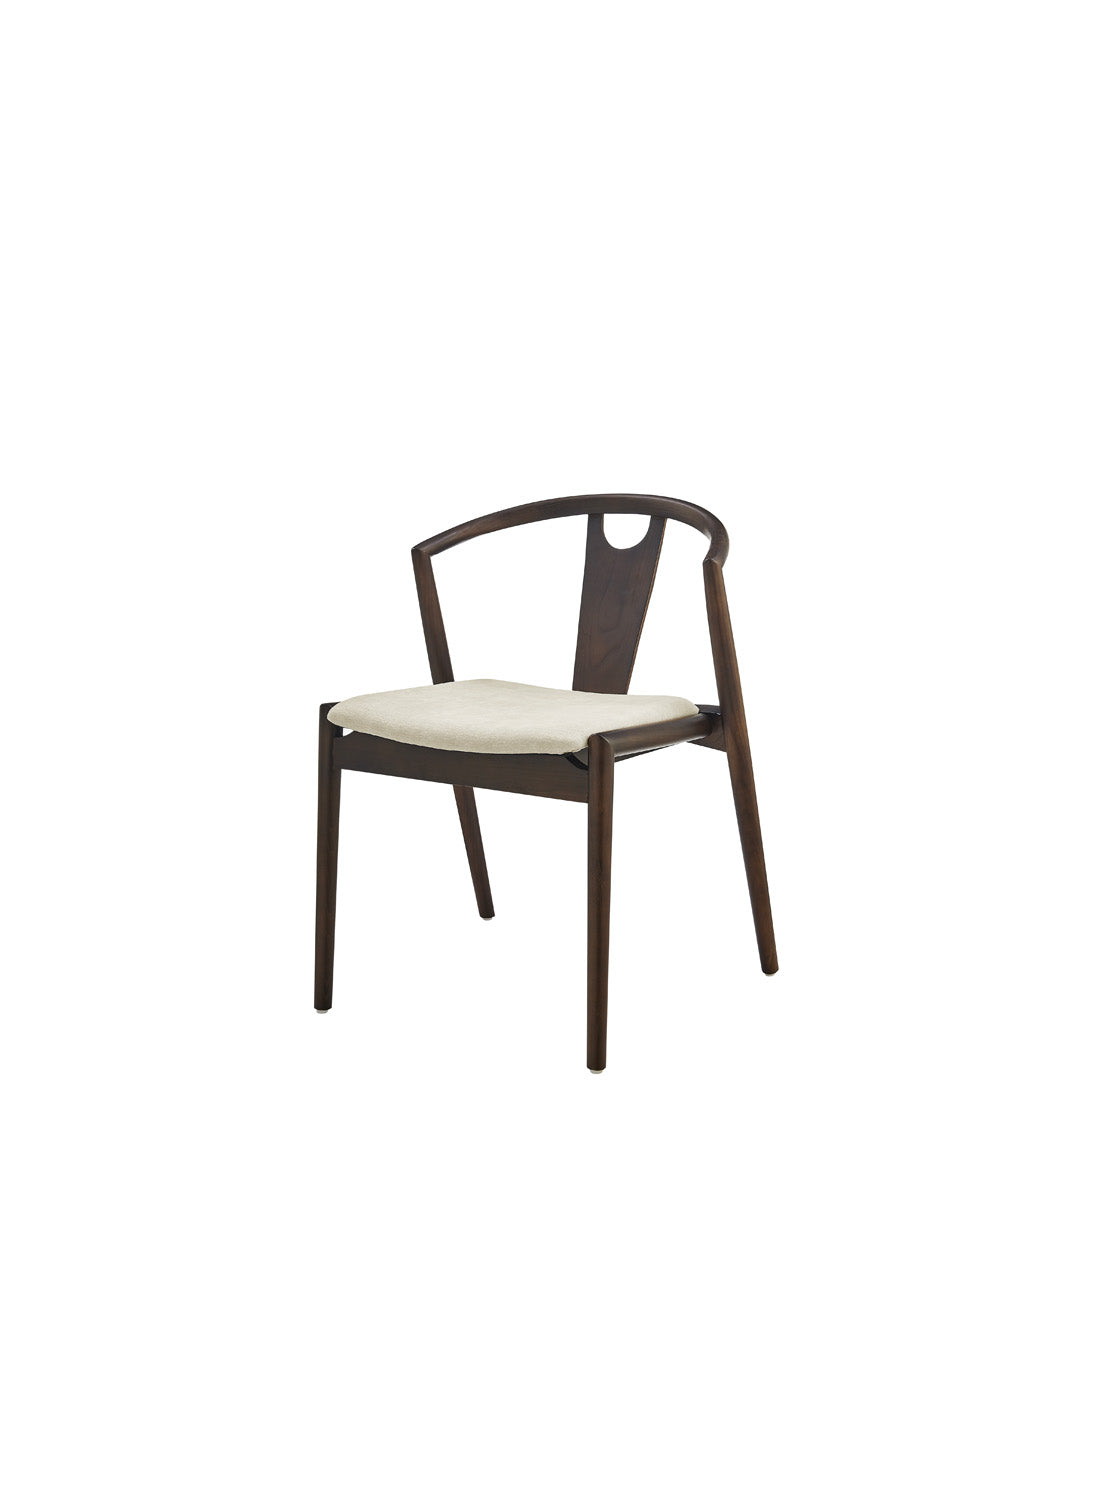 Arcadia Dining Chair, dark walnut